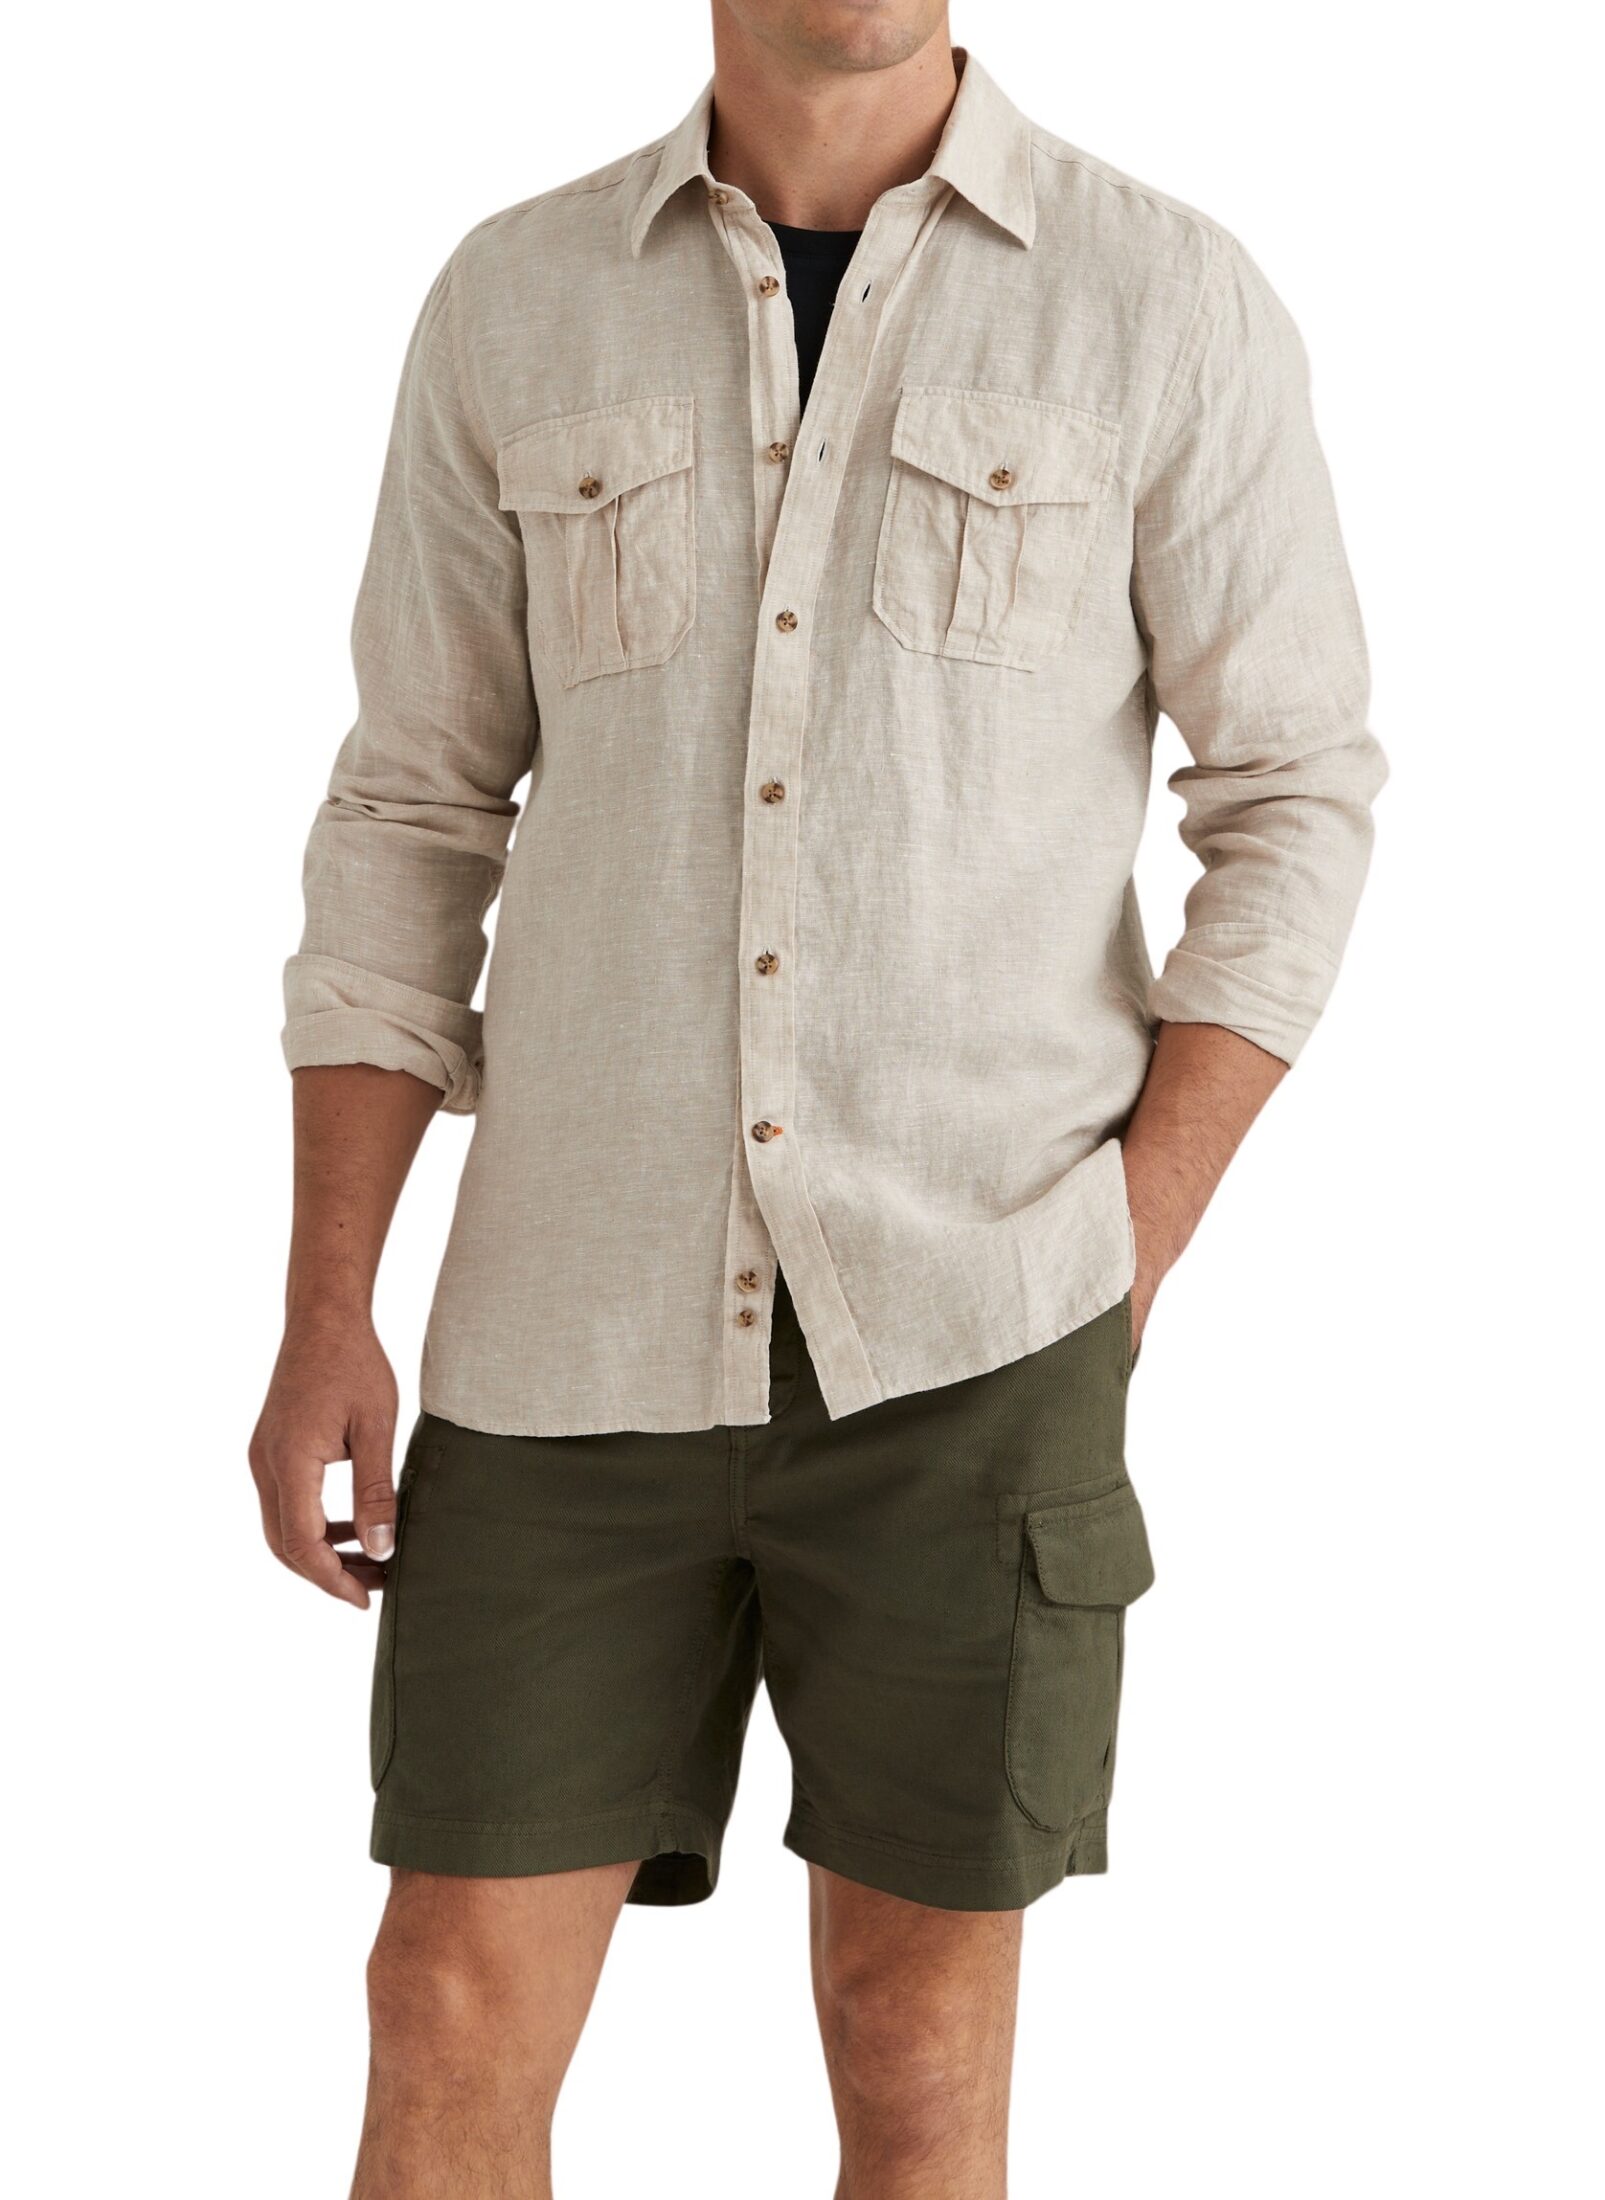 801605-safari-linen-shirt-classic-fit-05-khaki-1